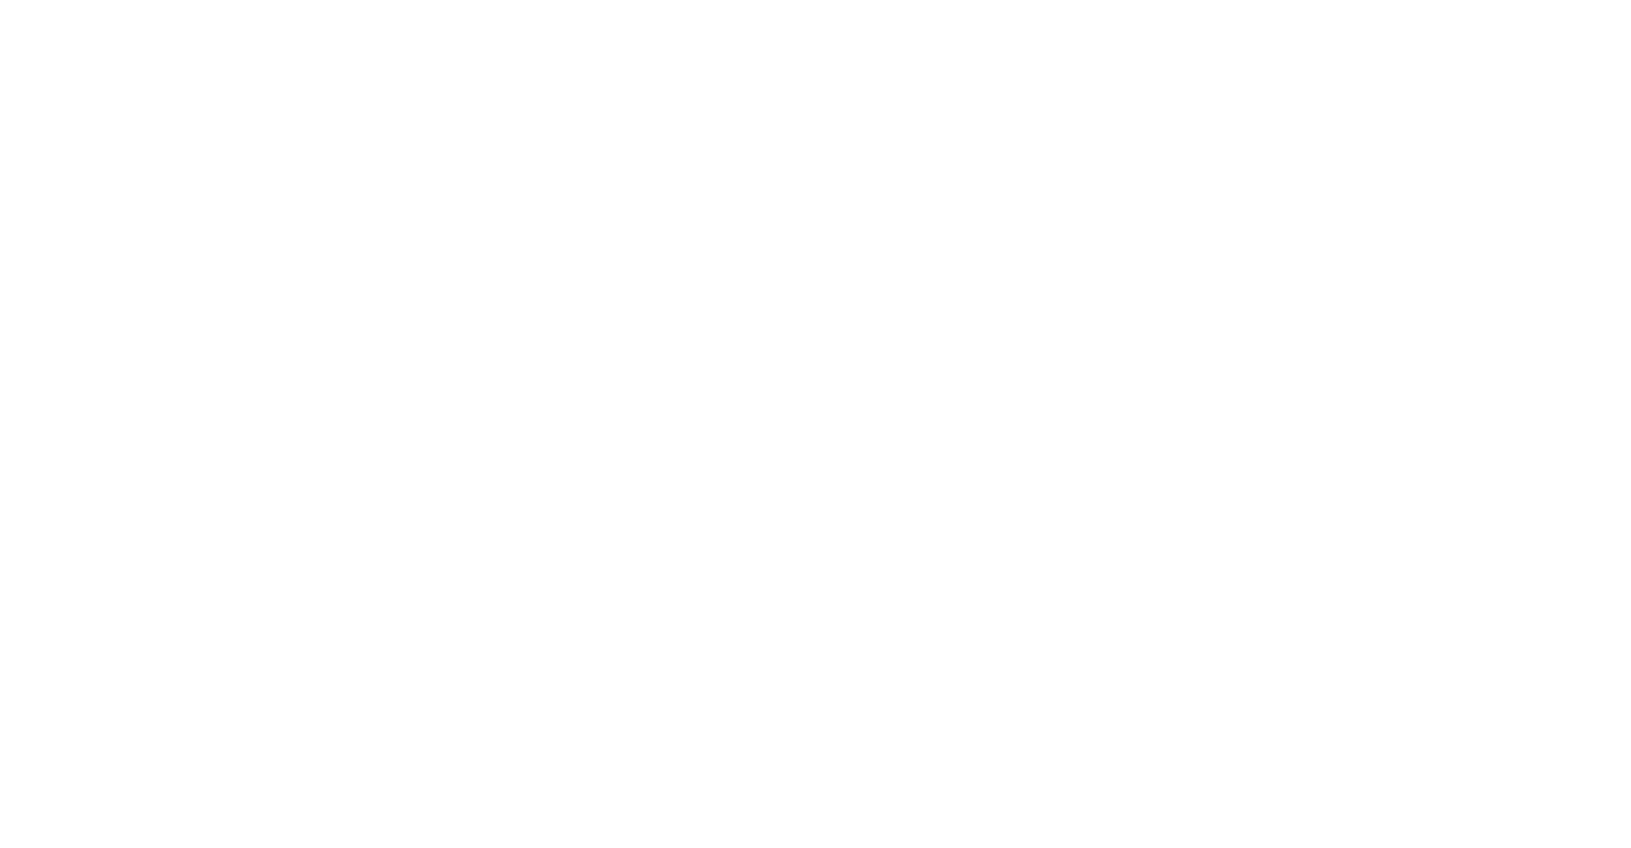 RiskTech100 2022 FIS Insurance